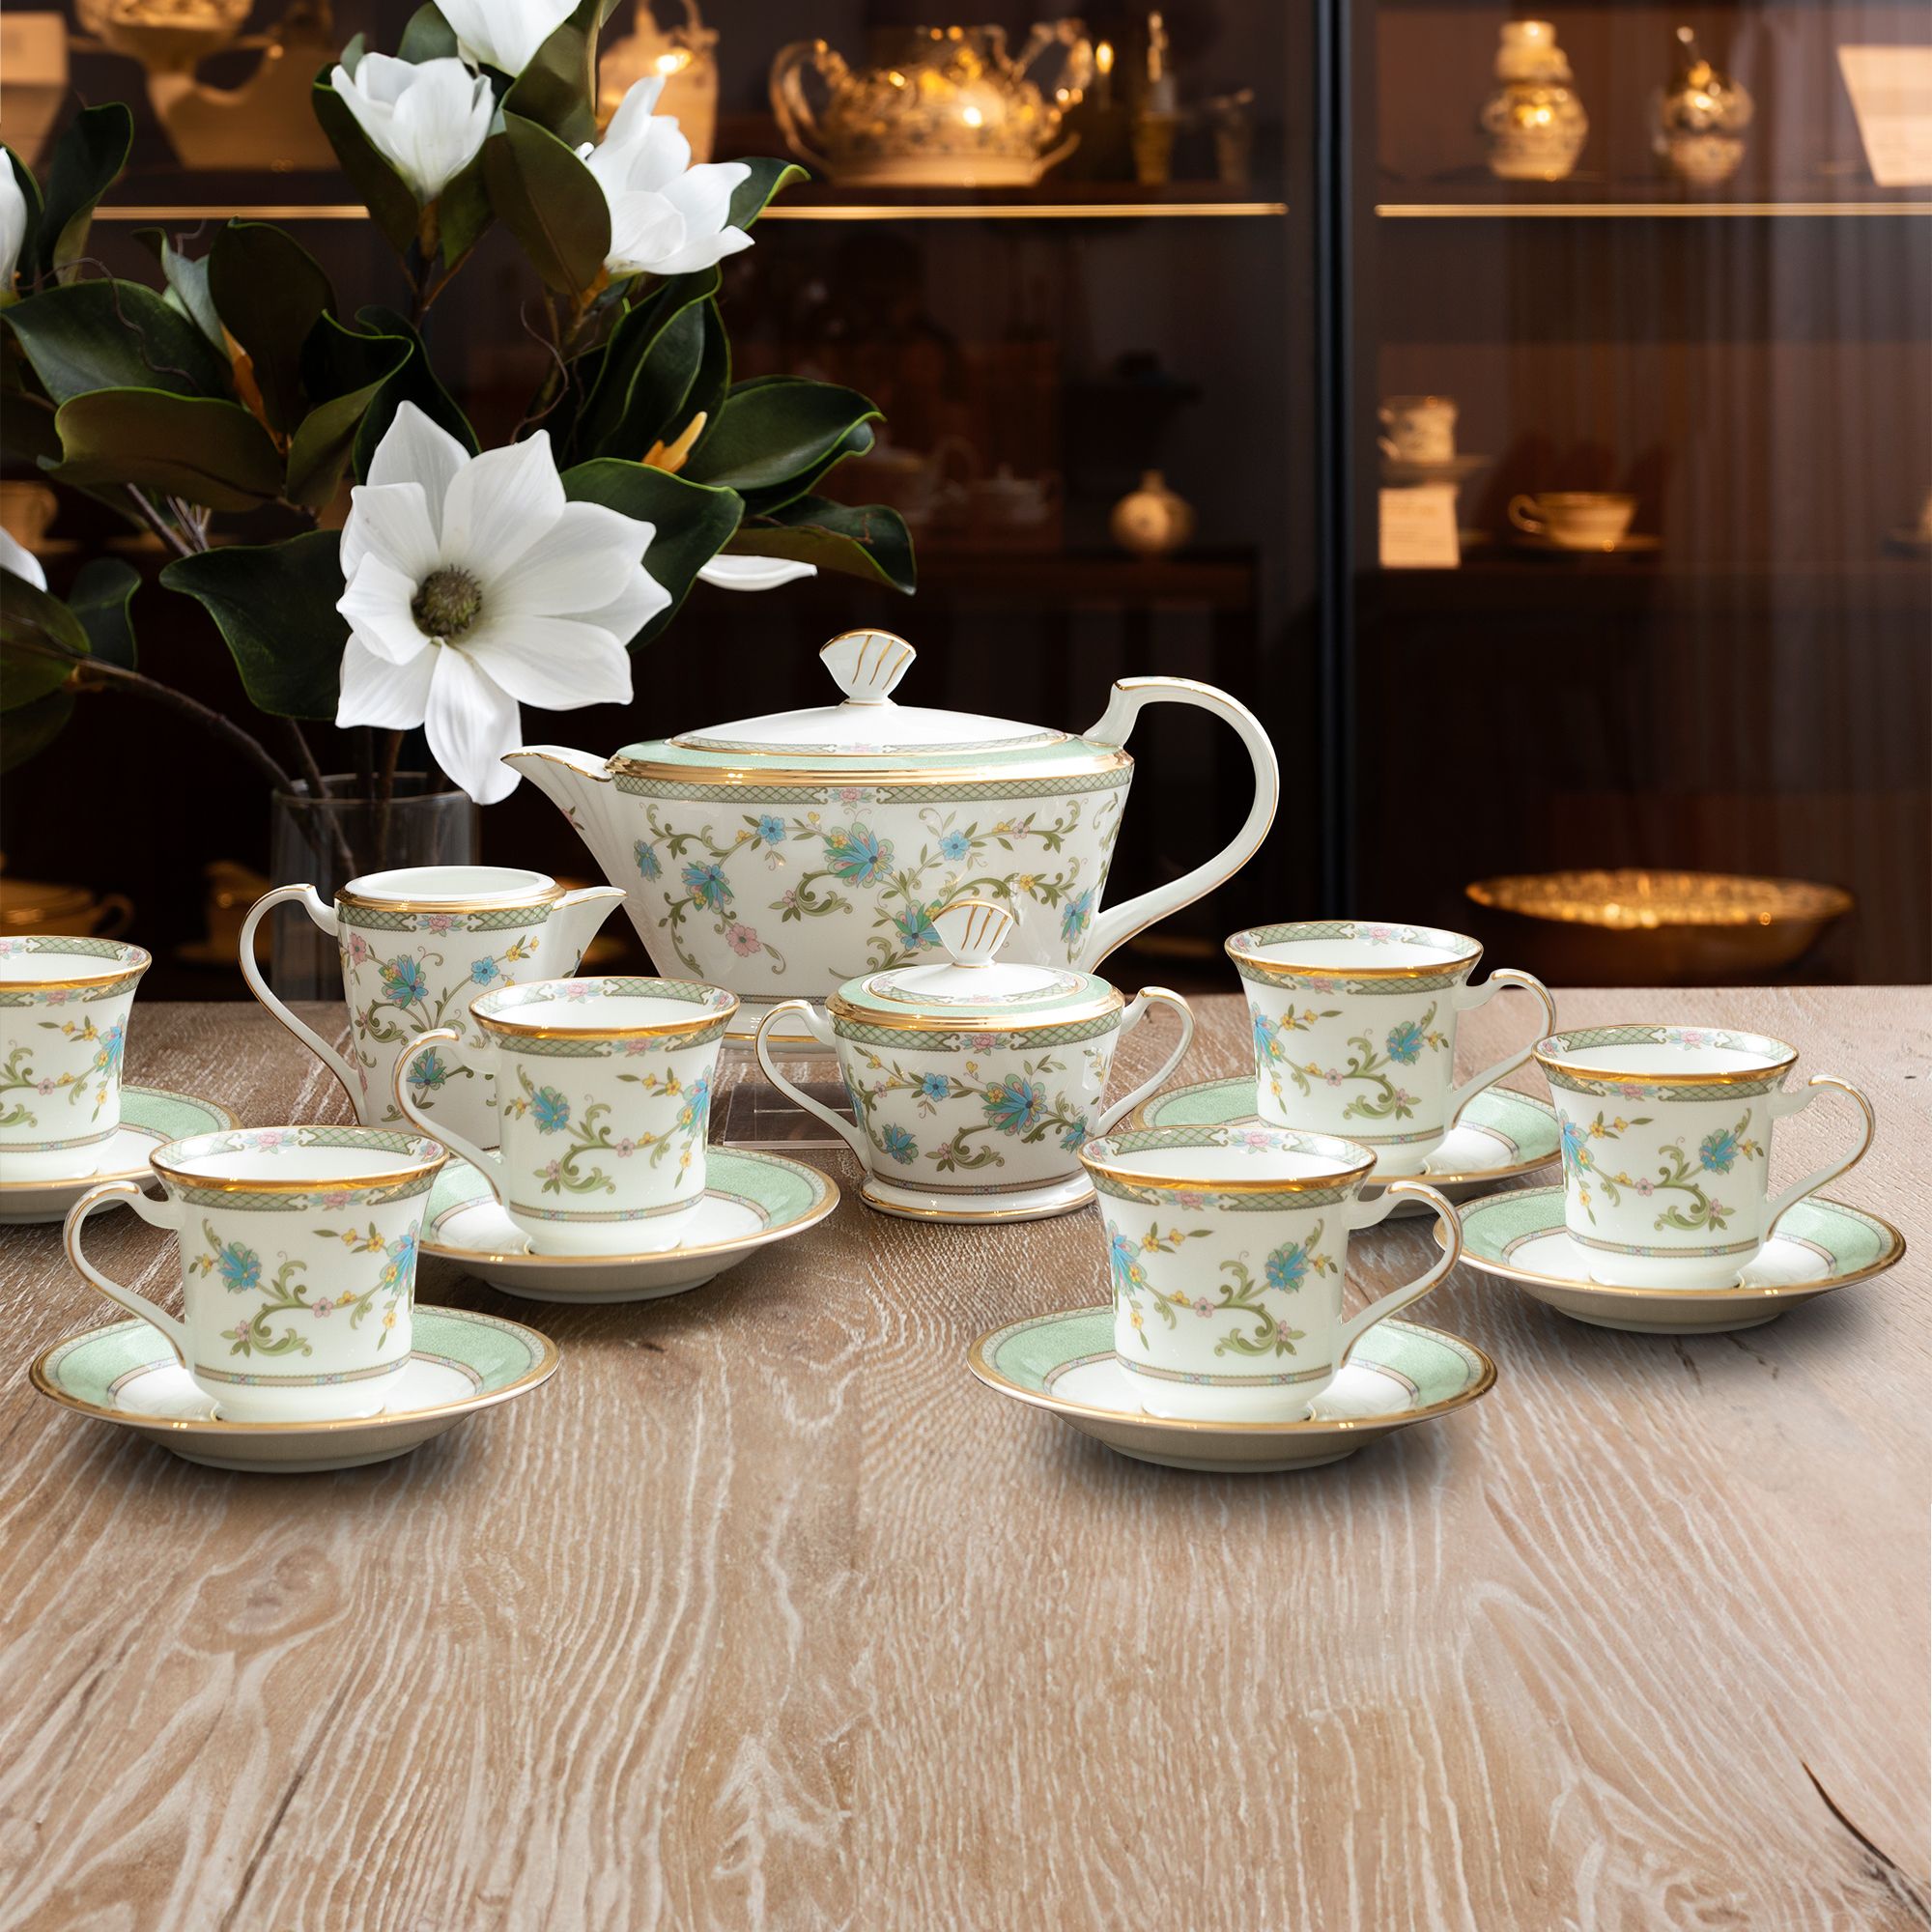  Bộ ấm chén uống trà 15 món sứ xương cao cấp viền vàng | Yoshino 9983J-T017L 